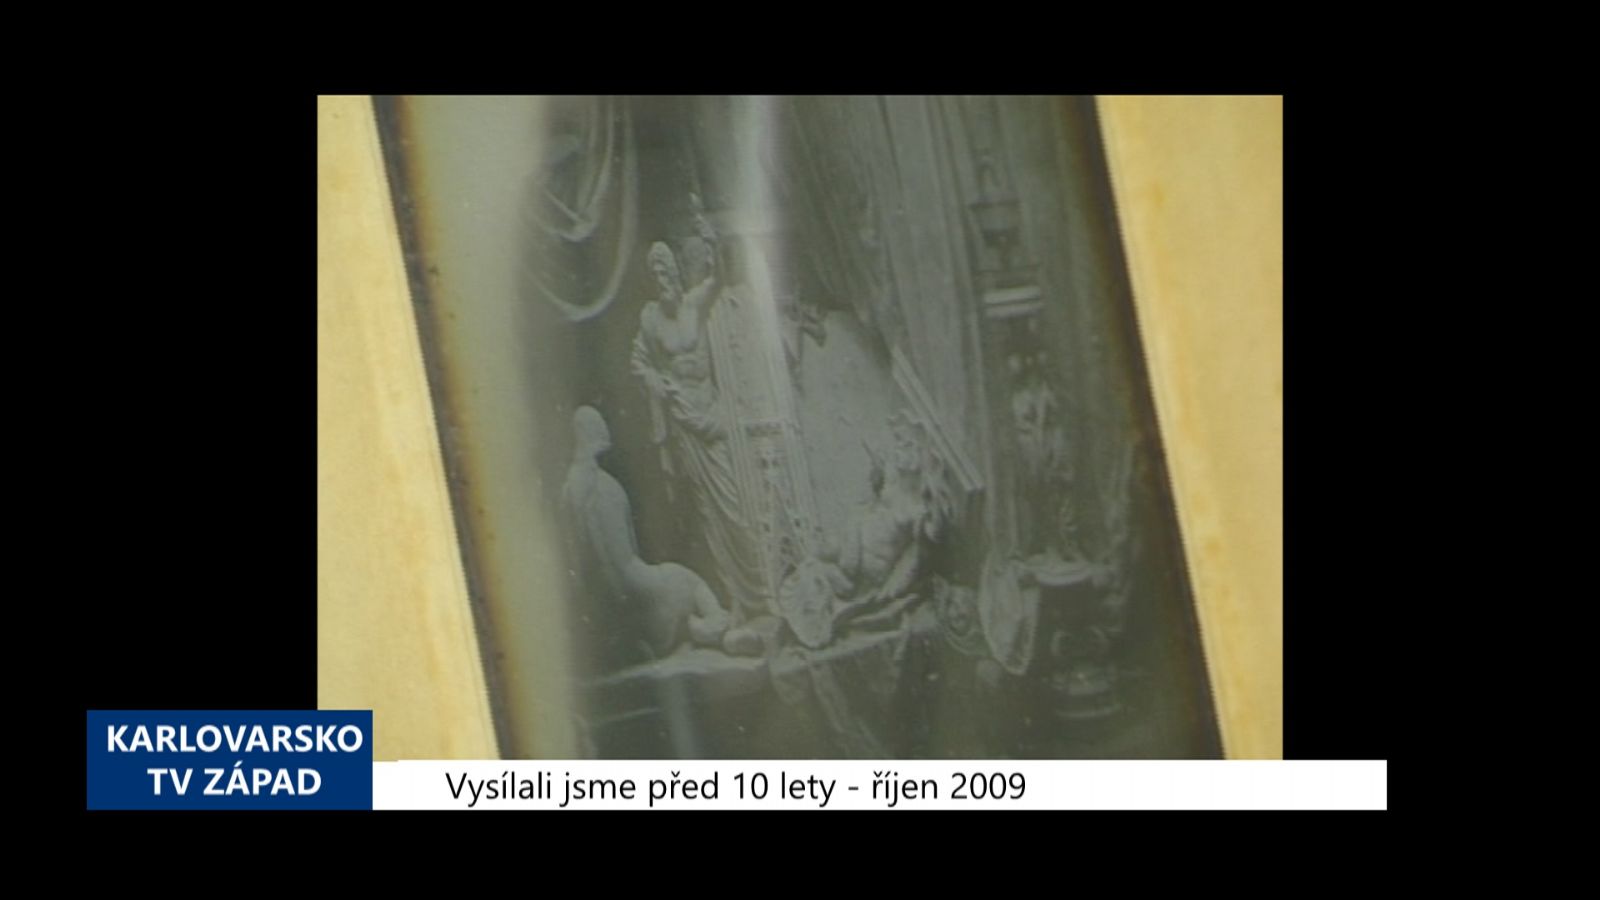 2009 – Kynžvart: Vzácná daguerrotypie na zámku (3855) (TV Západ)